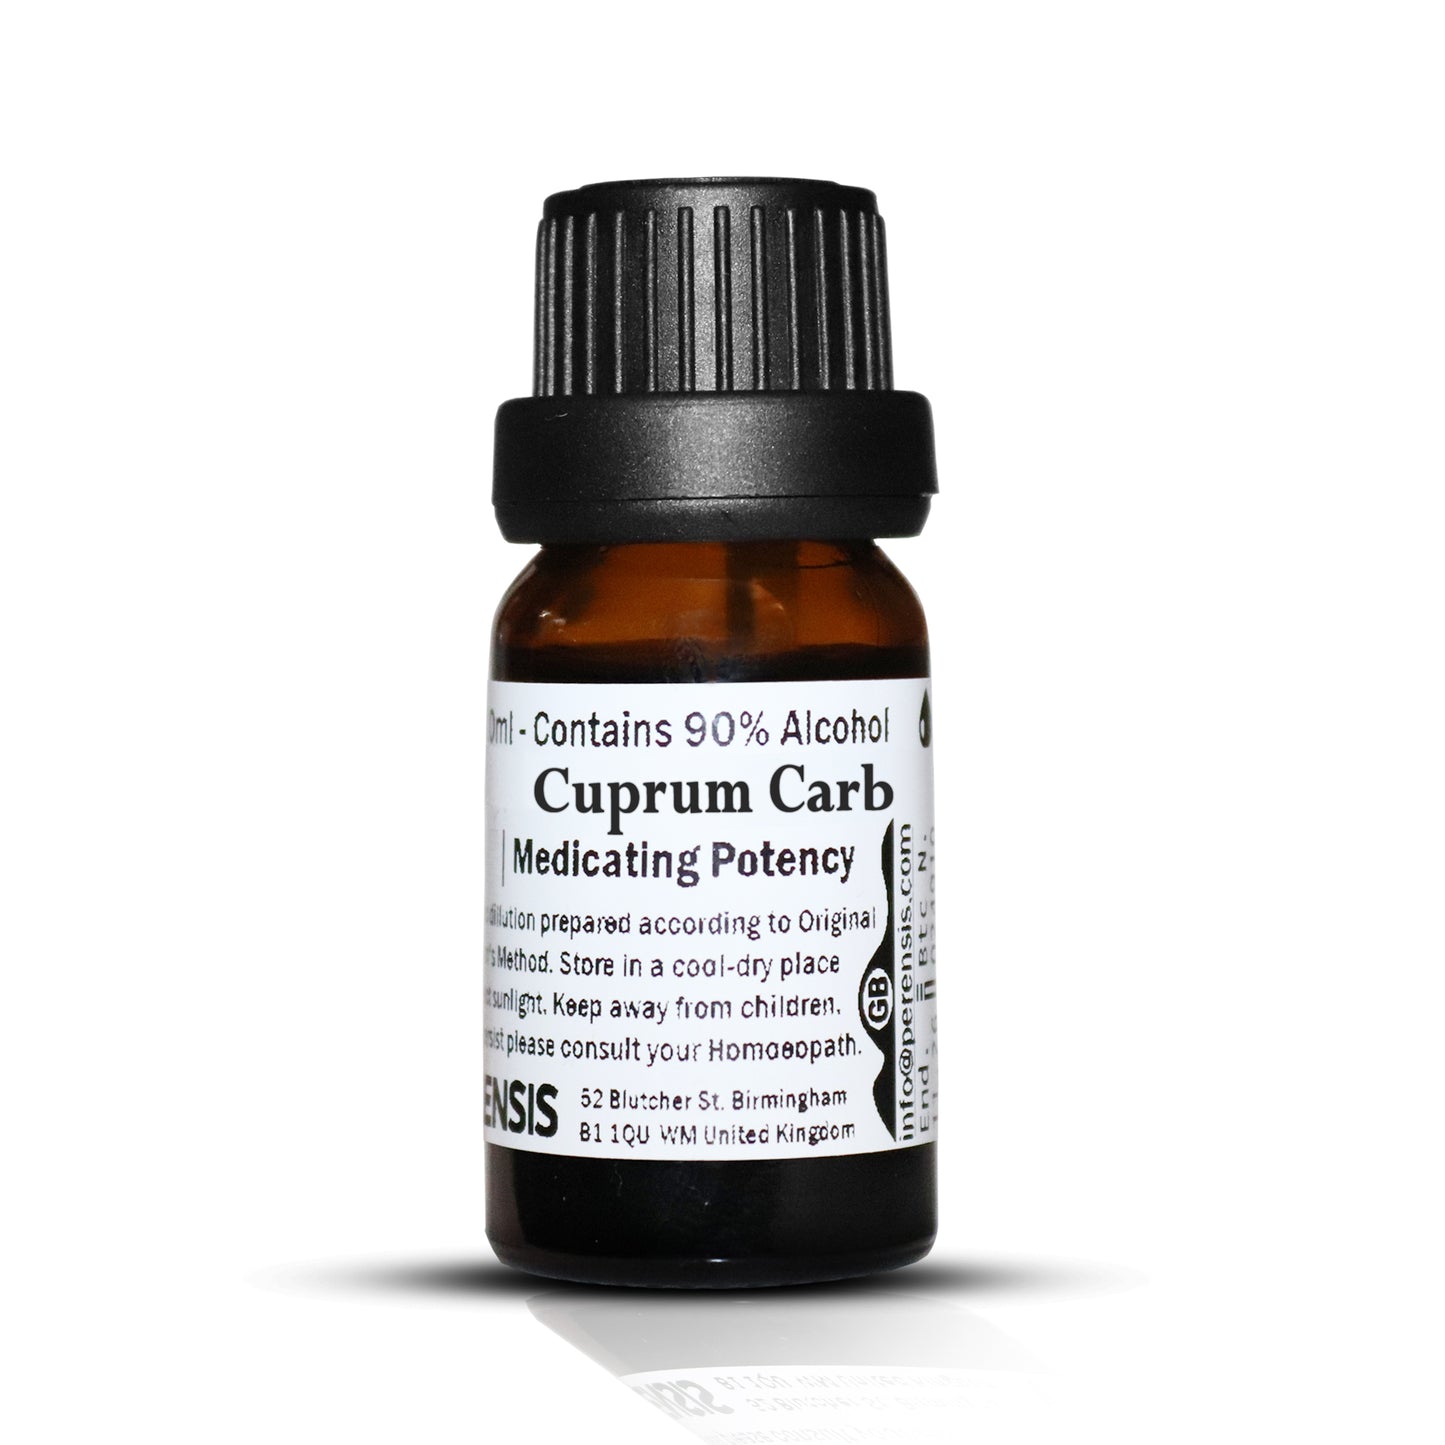 Cuprum Carb